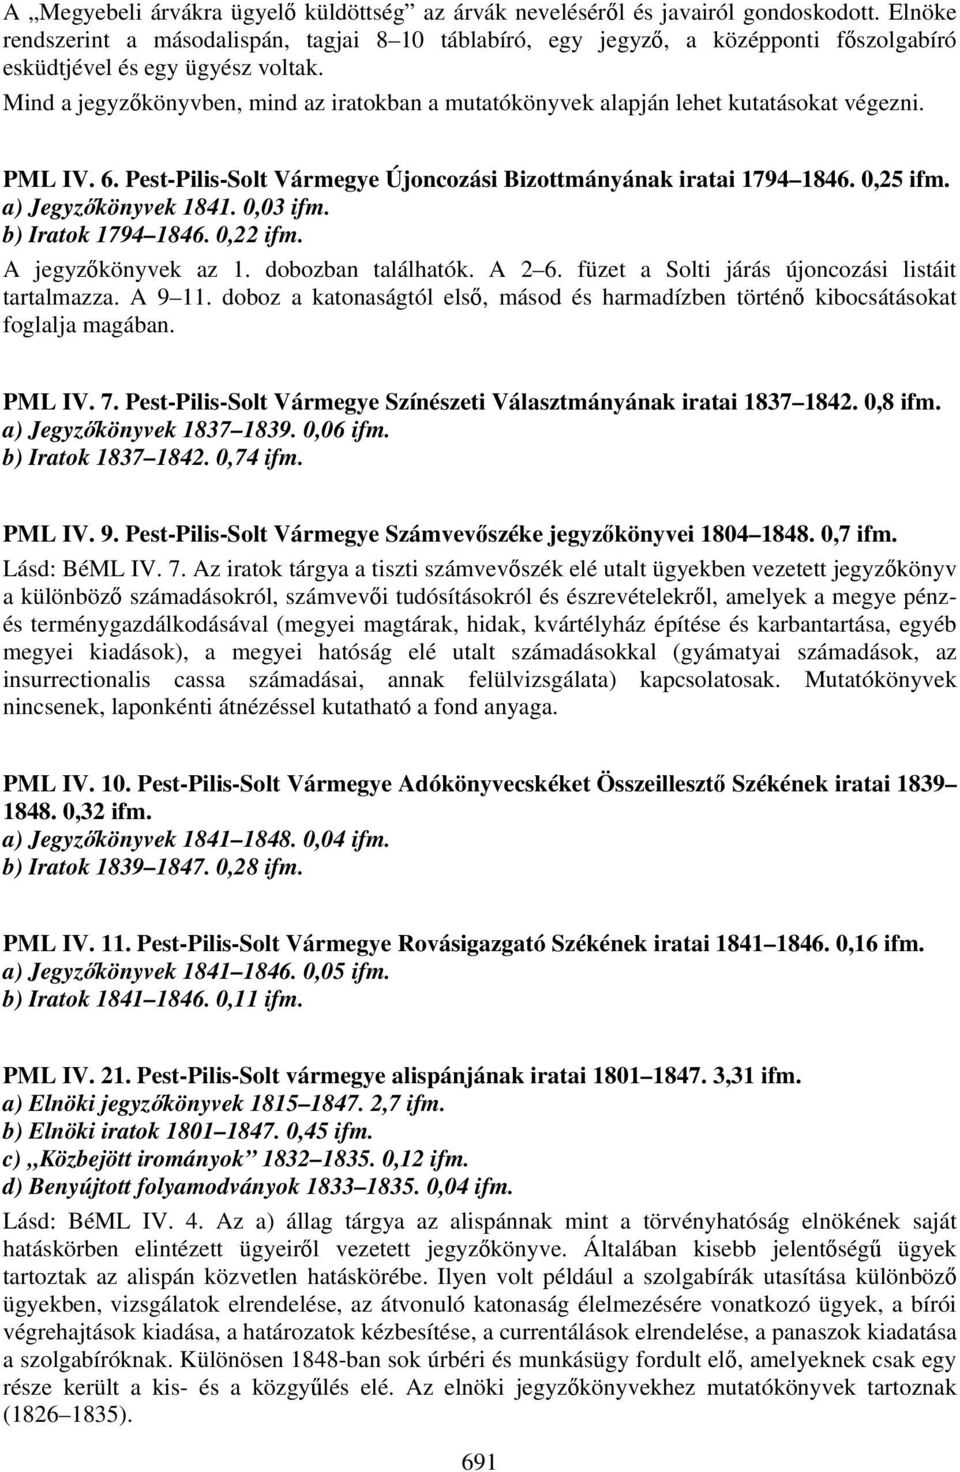 Mind a jegyzőkönyvben, mind az iratokban a mutatókönyvek alapján lehet kutatásokat végezni. PML IV. 6. Pest-Pilis-Solt Vármegye Újoncozási Bizottmányának iratai 1794 1846. 0,25 ifm.